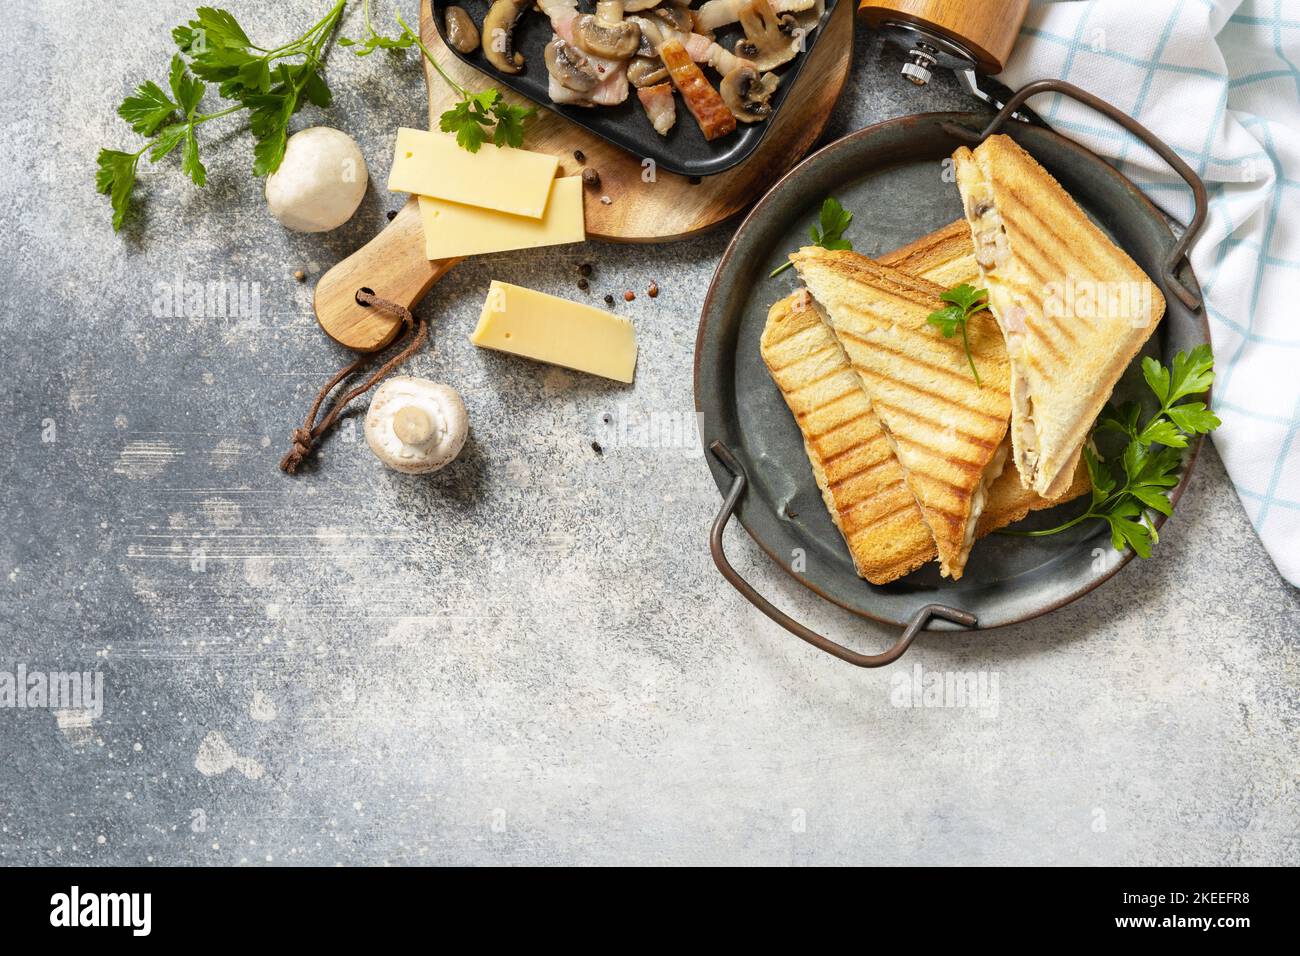 Délicieux sandwich club, fromage grillé maison, sandwich au bacon et aux champignons pour le petit déjeuner sur une table en pierre. Vue de dessus. Copier l'espace. Banque D'Images